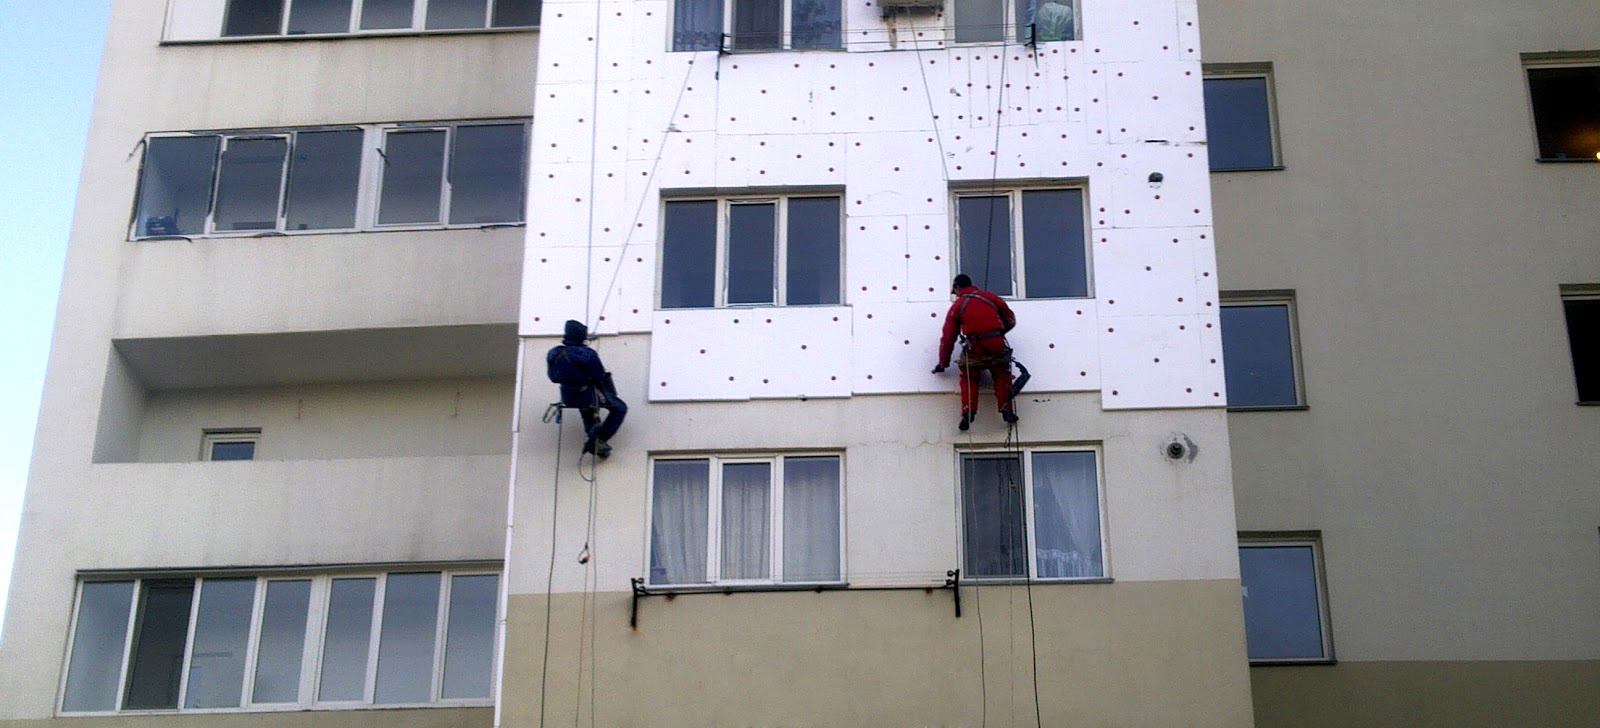 За год с помощью “теплых кредитов” в Киеве утеплили более 100 домов